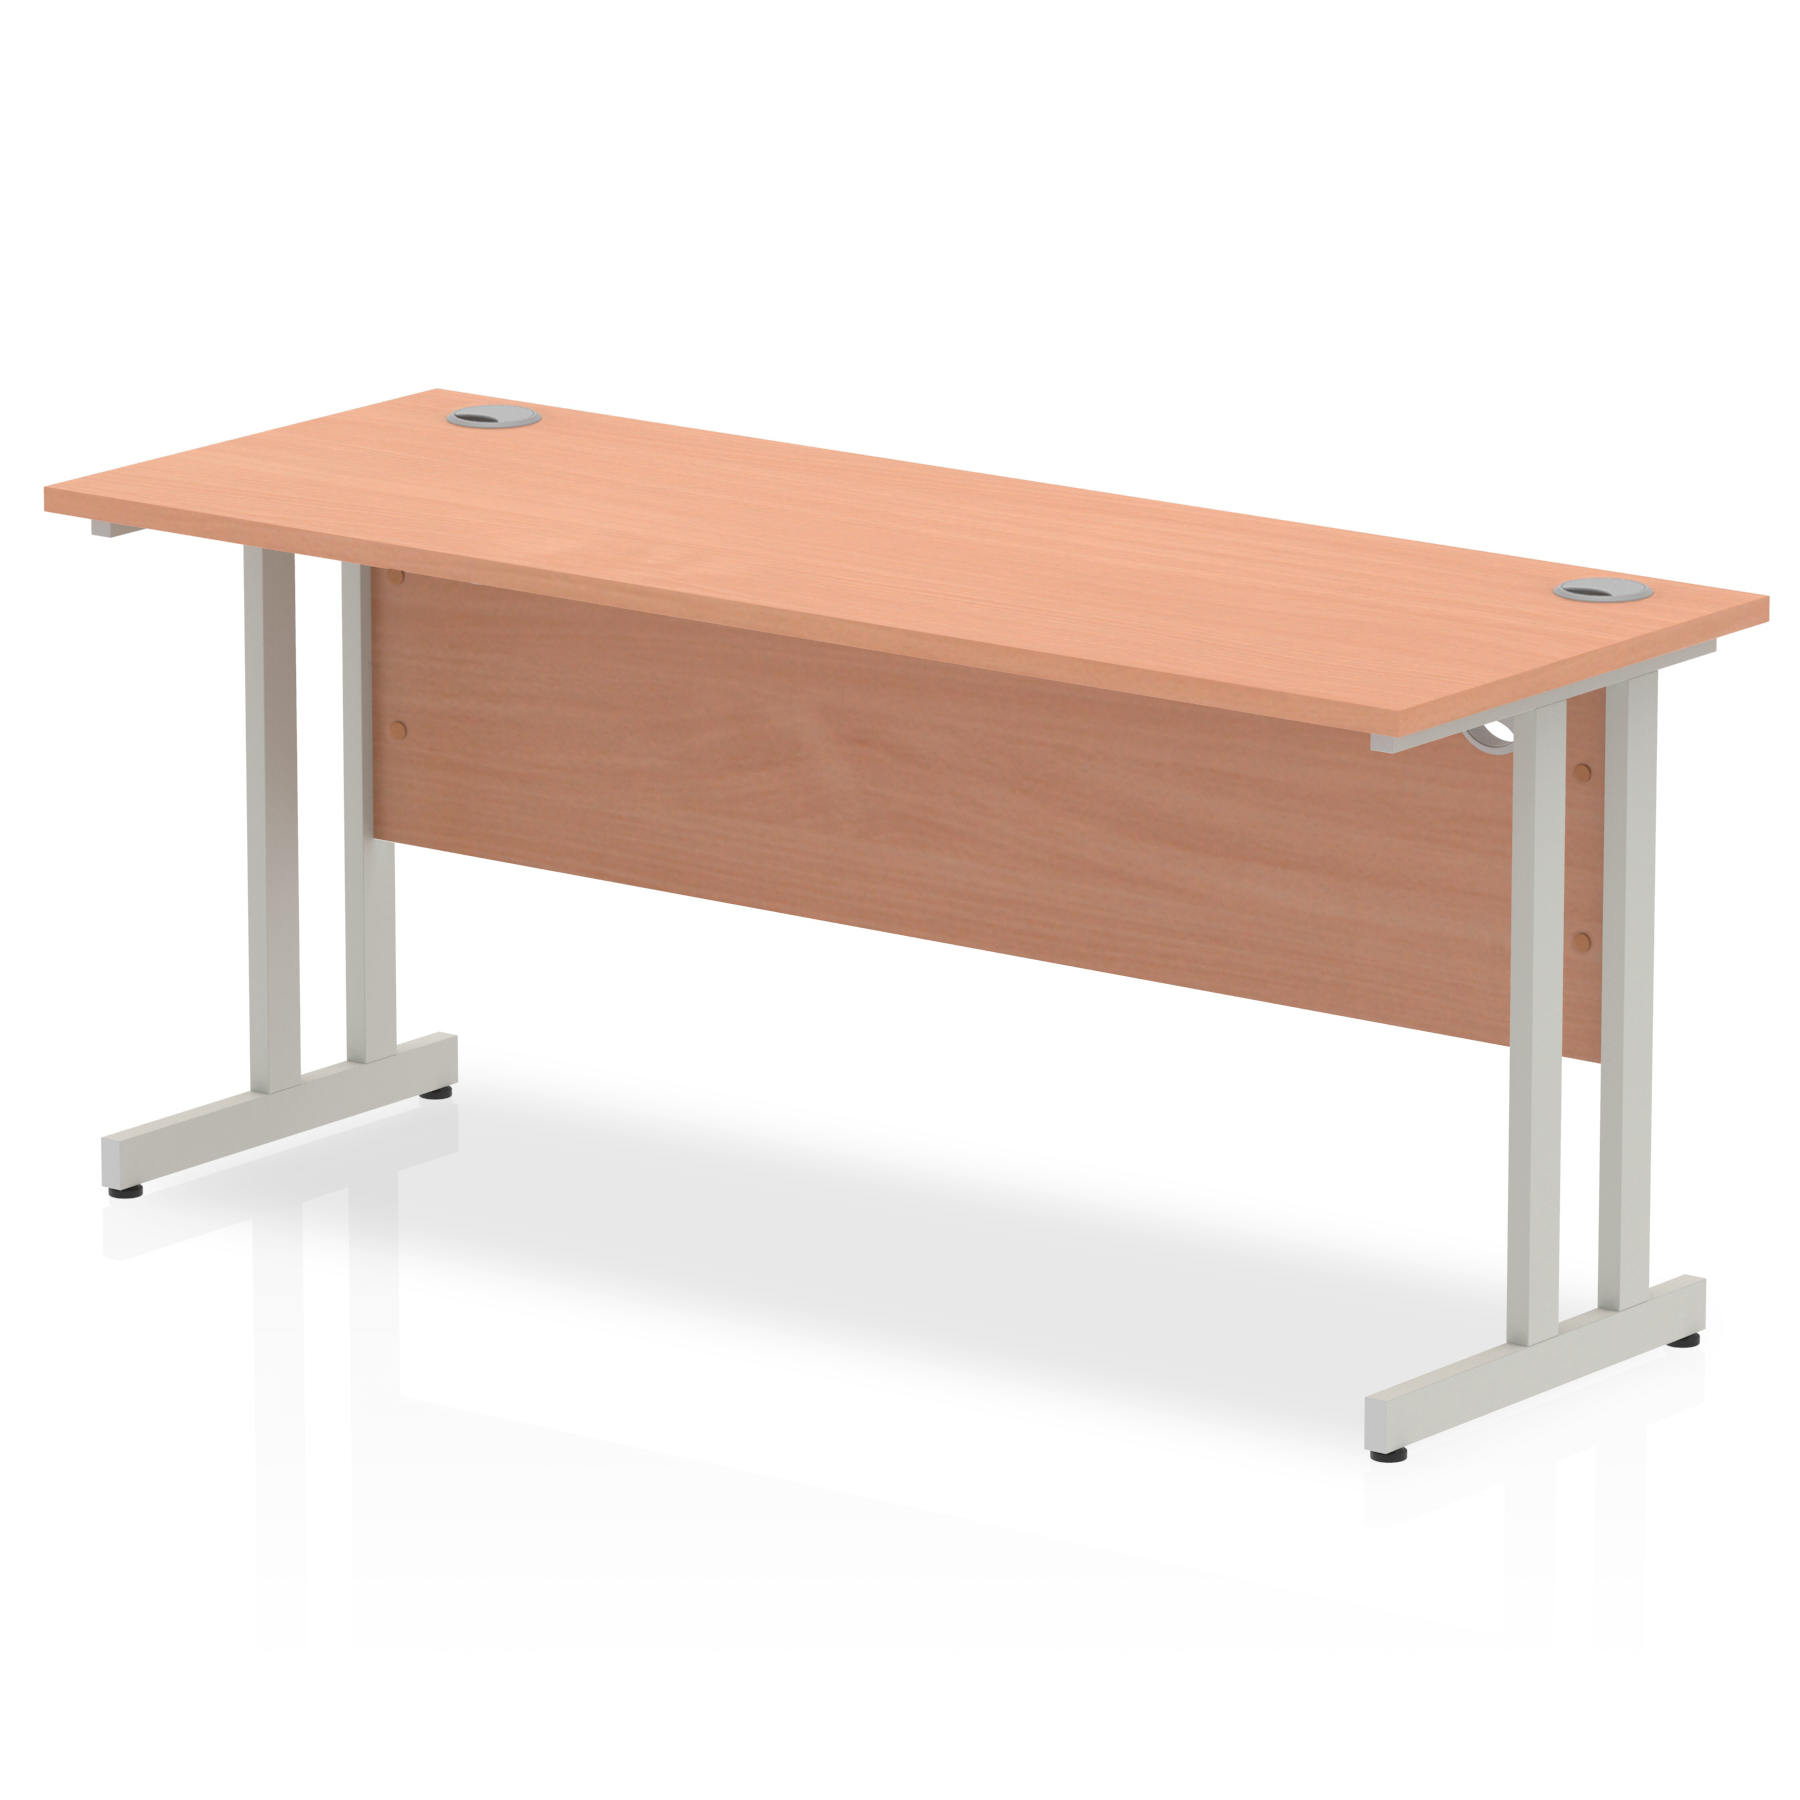 Budget  Desk  1600 x 600 cantilever desk Beech MFC  top silver legs 